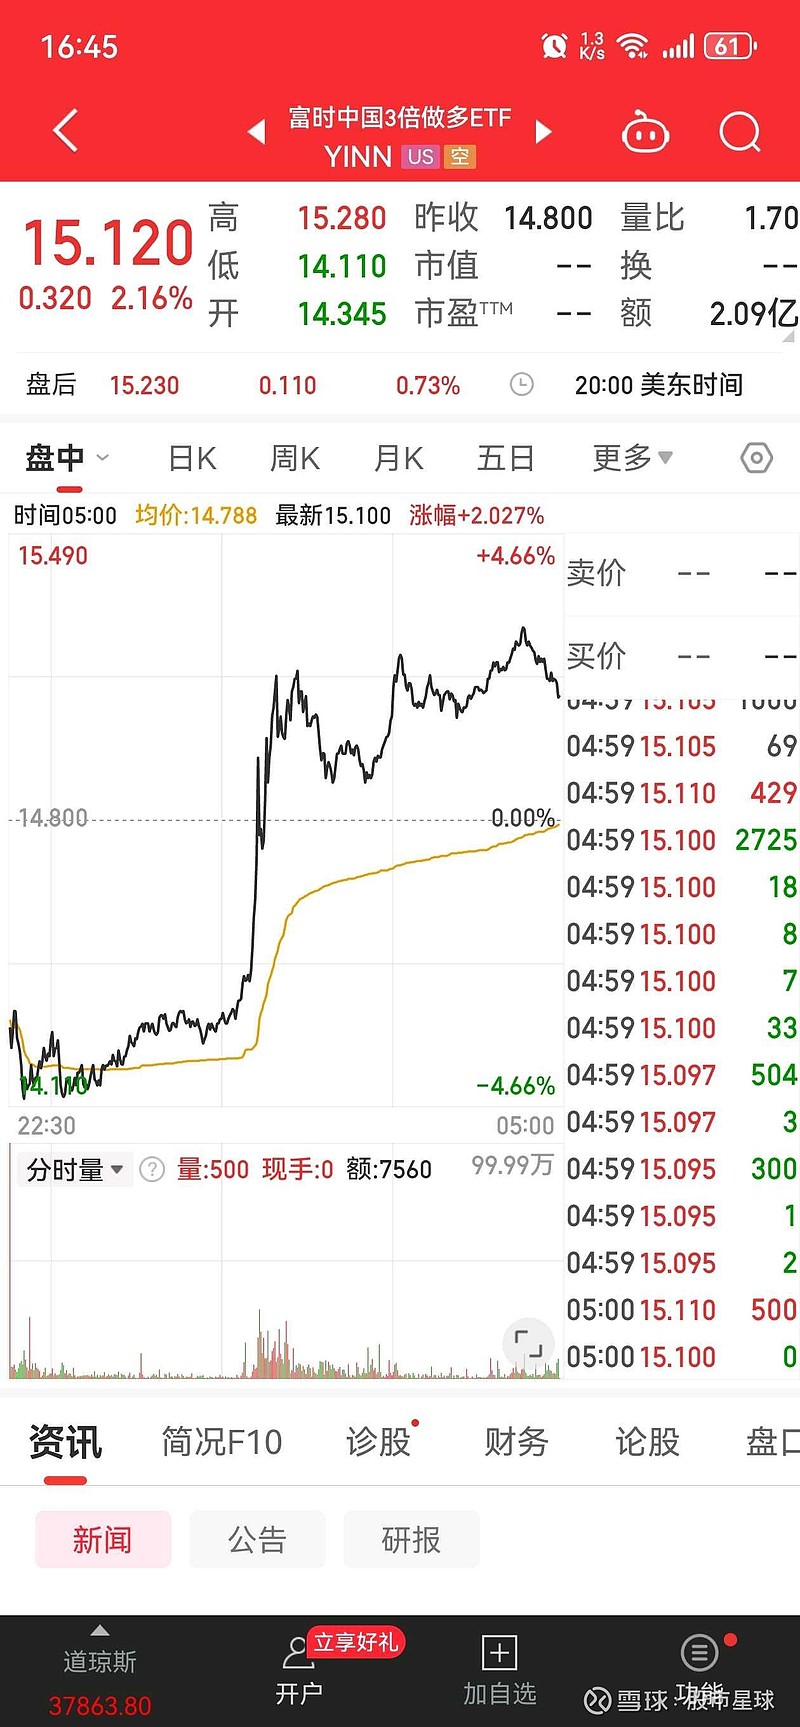 美股富时中国50三倍做空大逆转